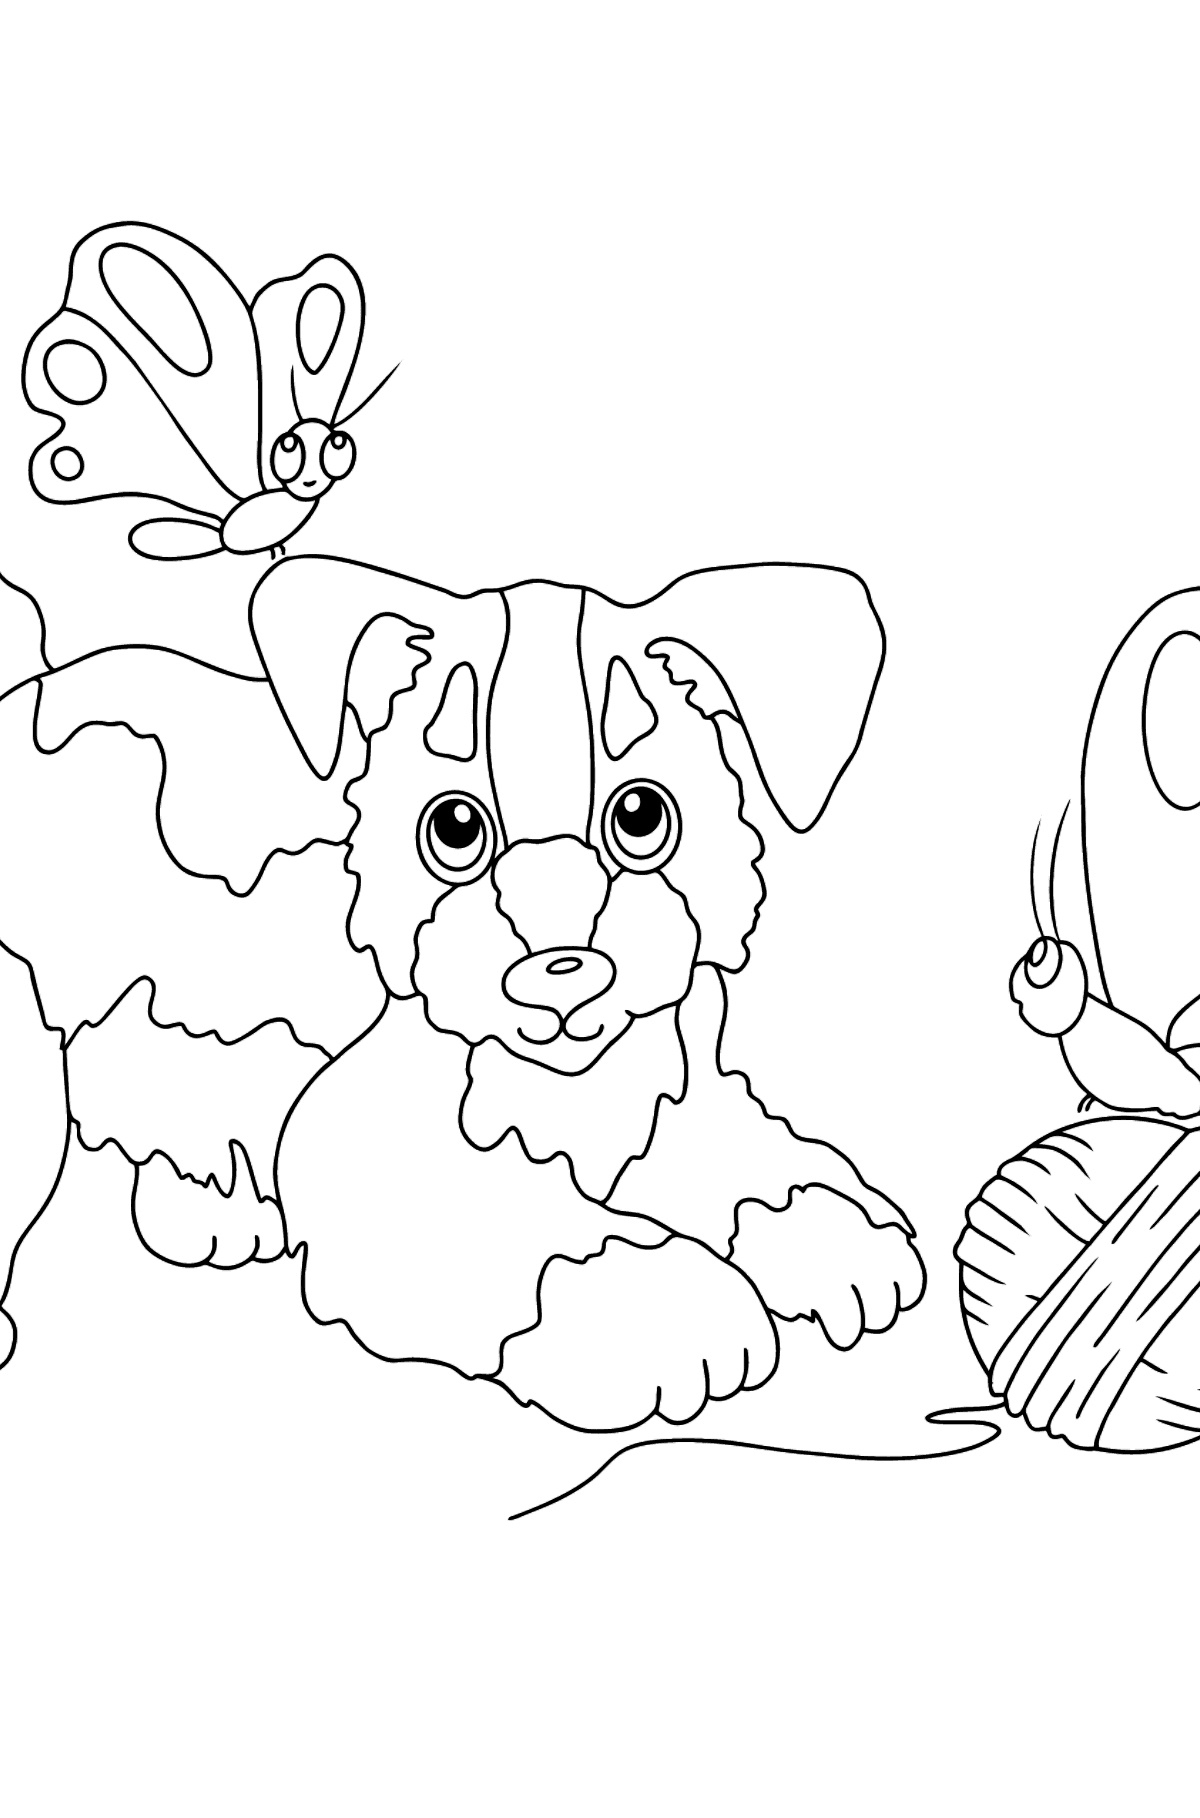 Coloriage - Un chien joue avec une pelote de laine et des papillons - Coloriages pour les Enfants